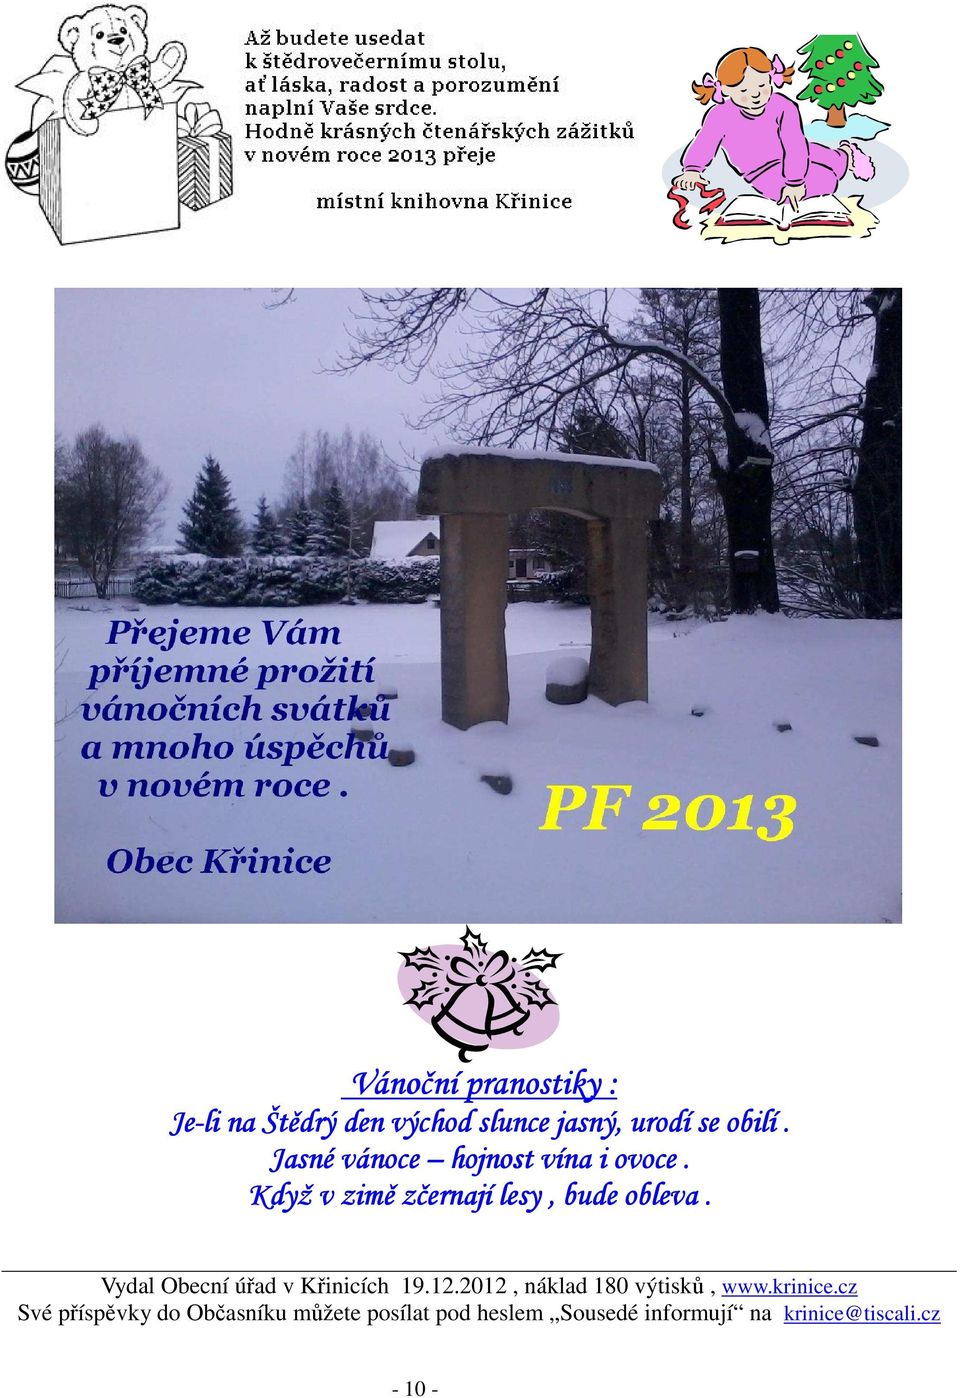 Vydal Obecní úřad v Křinicích 19.12.2012, náklad 180 výtisků, www.krinice.